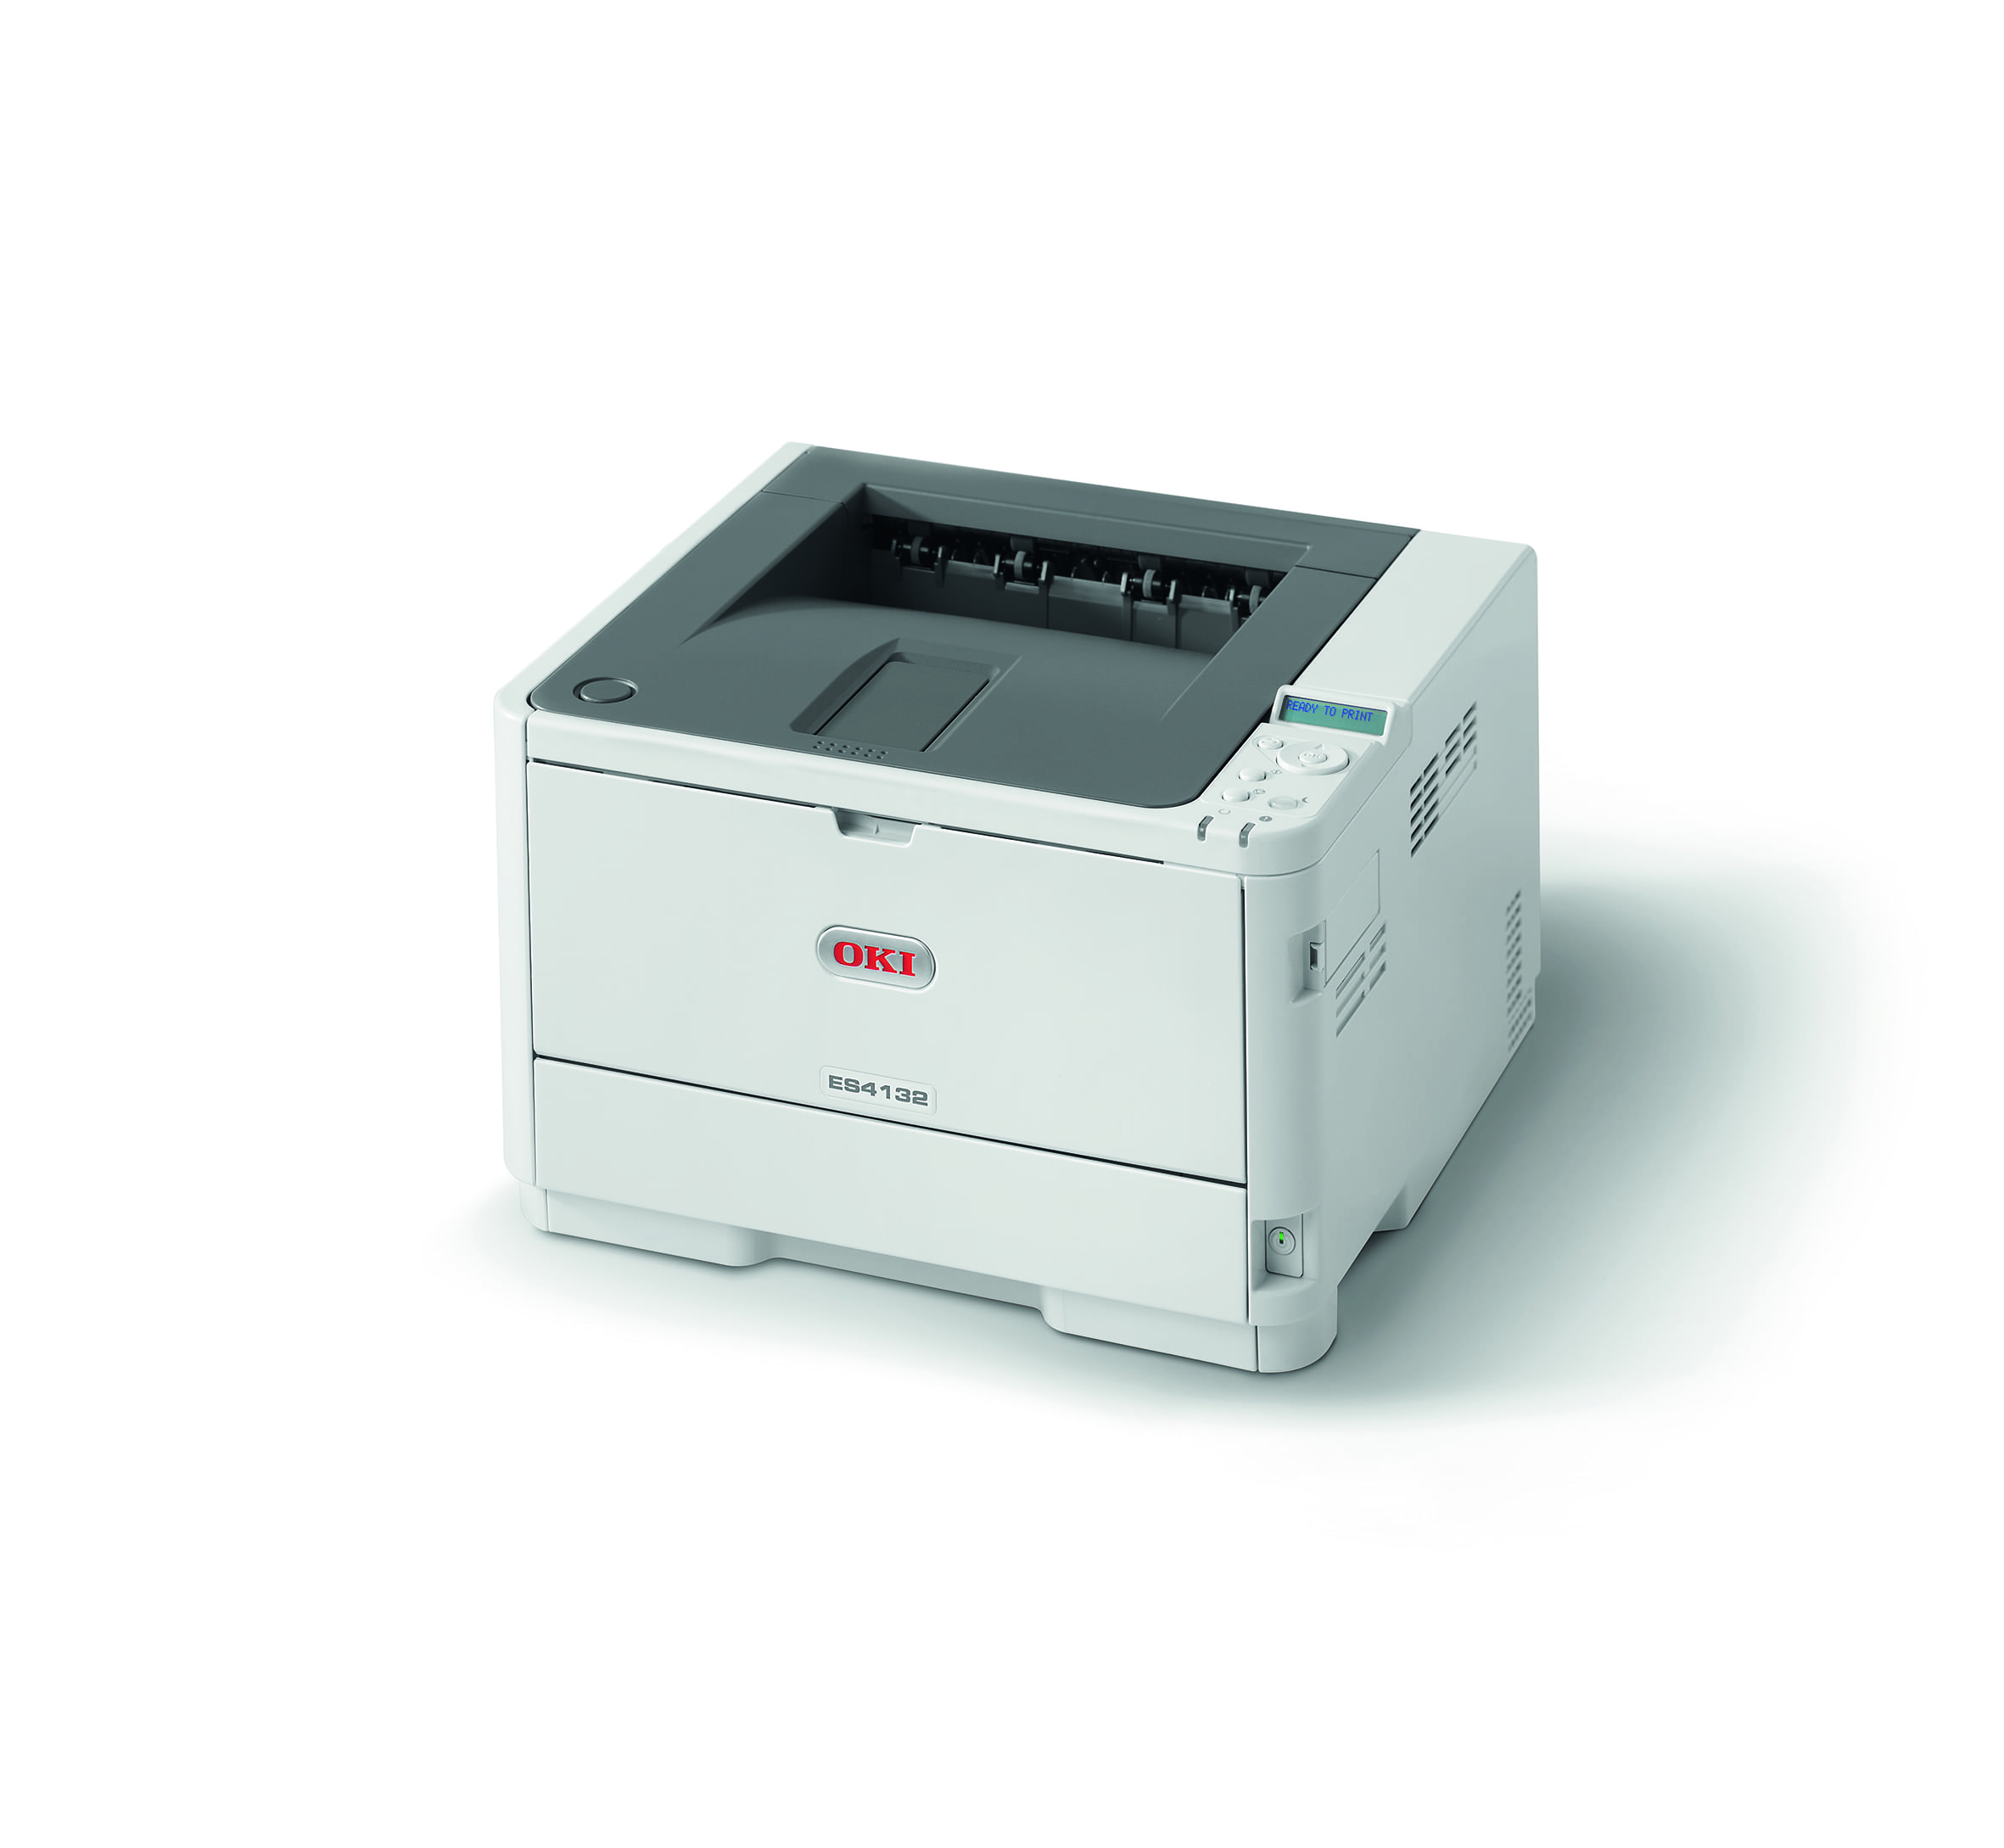 OKI ES4132 Mono Printer Toner Cartridges